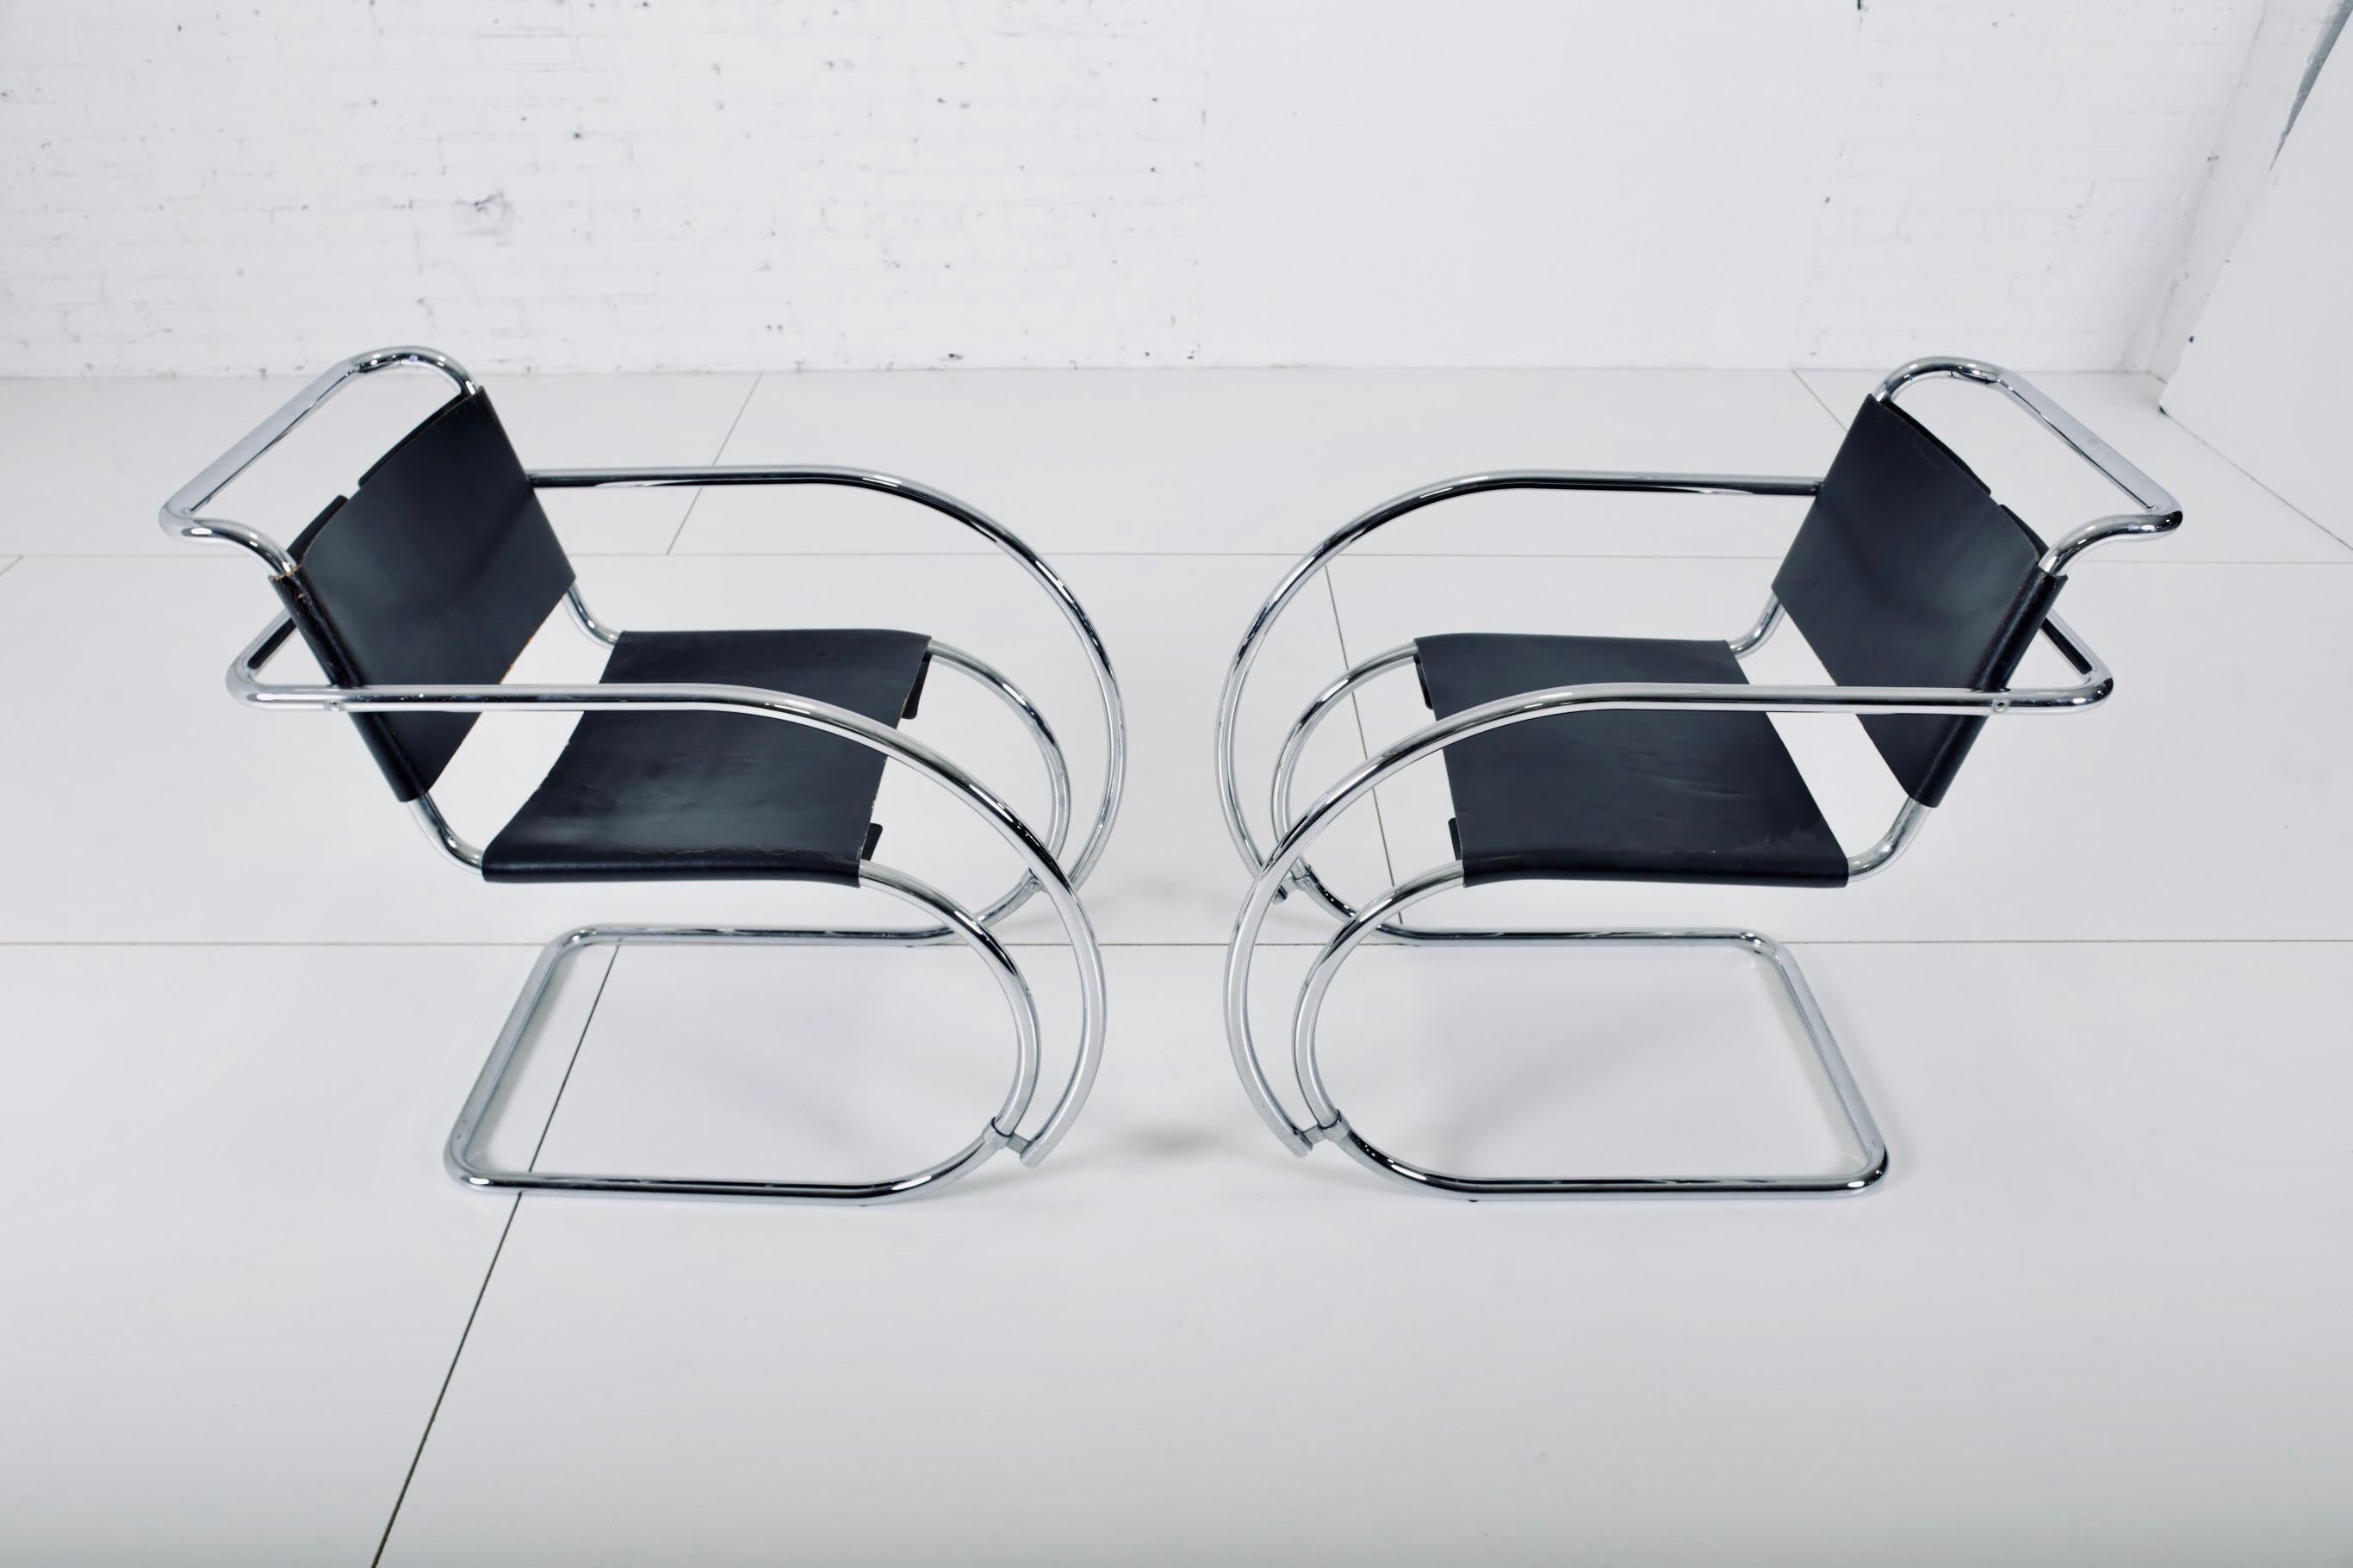 Ein Paar MR20-Sessel aus den 1960er Jahren, entworfen von Mies van der Rohe für Knoll. Die Originalrahmen aus Leder und Edelstahl sind in einem hervorragenden Zustand. Die Stühle tragen frühe Knoll-Etiketten.

 